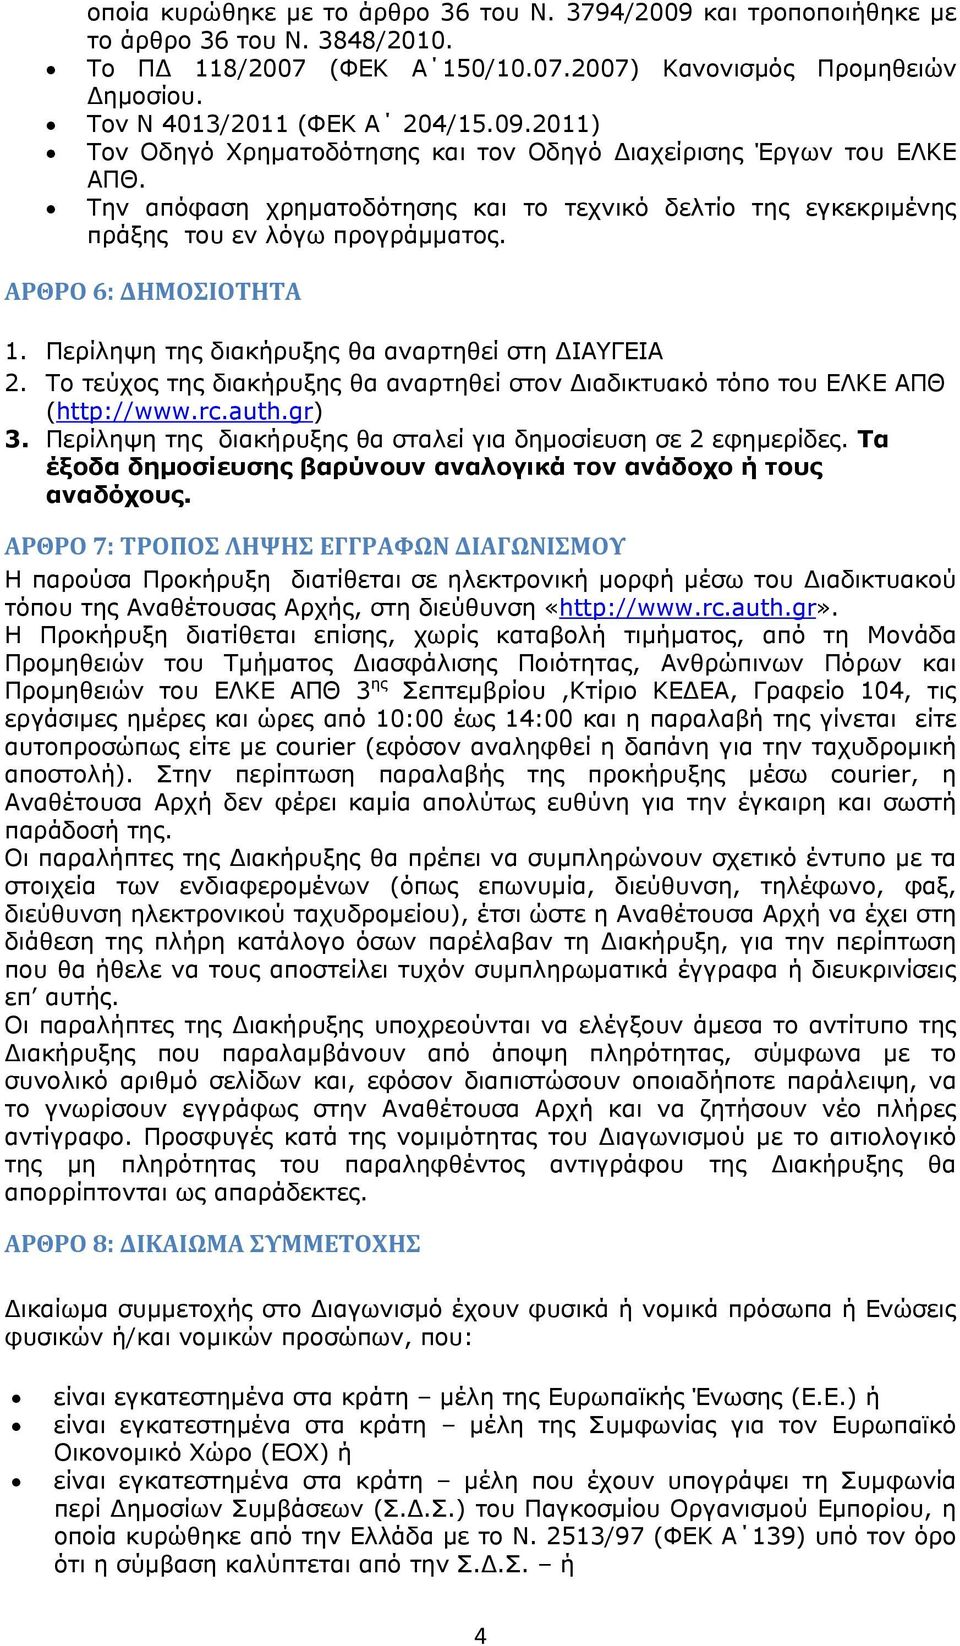 Το τεύχος της διακήρυξης θα αναρτηθεί στον ιαδικτυακό τόπο του ΕΛΚΕ ΑΠΘ (http://www.rc.auth.gr) 3. Περίληψη της διακήρυξης θα σταλεί για δημοσίευση σε 2 εφημερίδες.